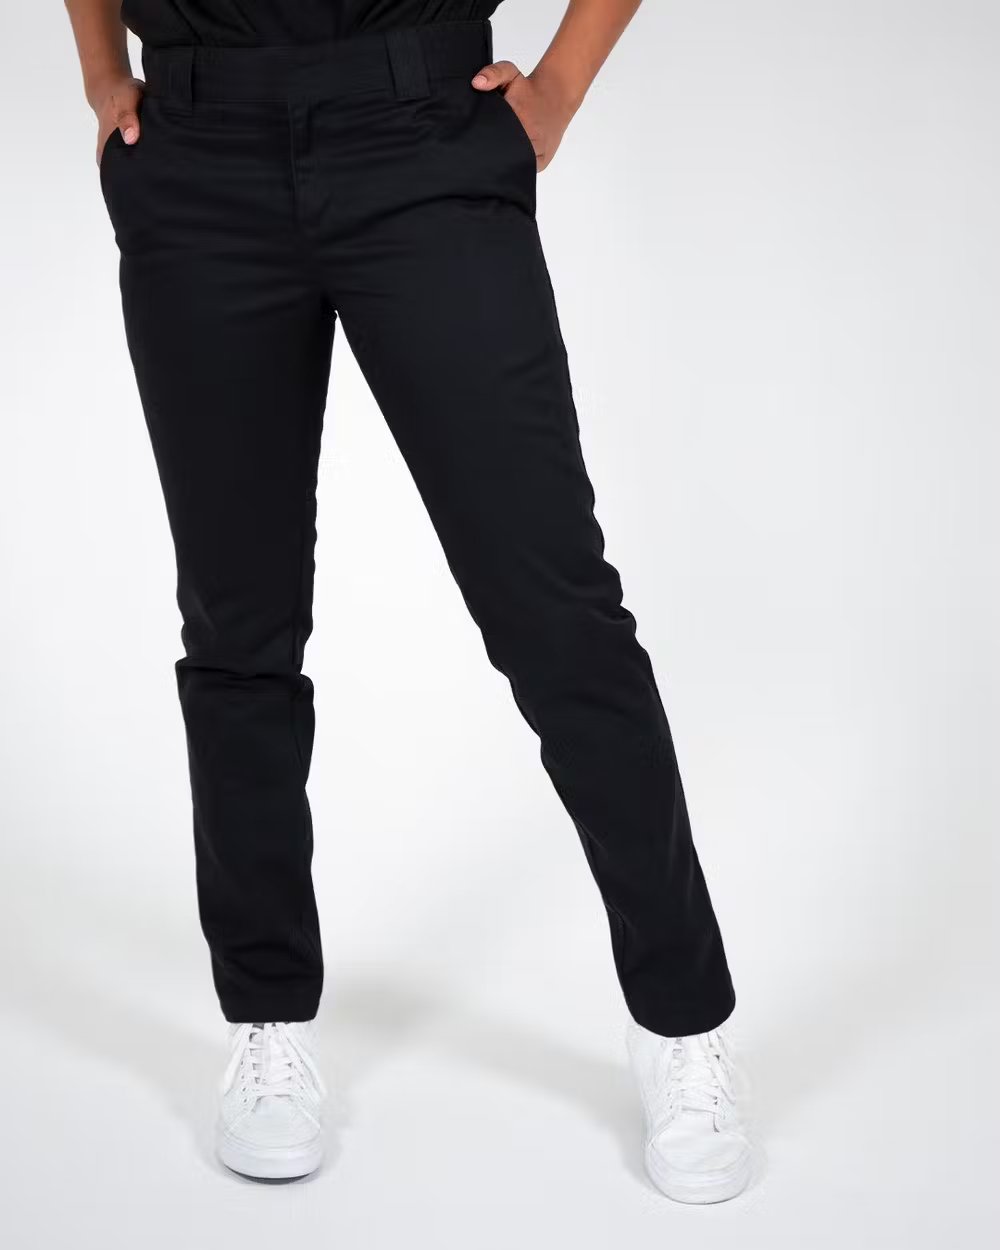 DICKIES 872 Slim Fit Pants - Black - VENUE.